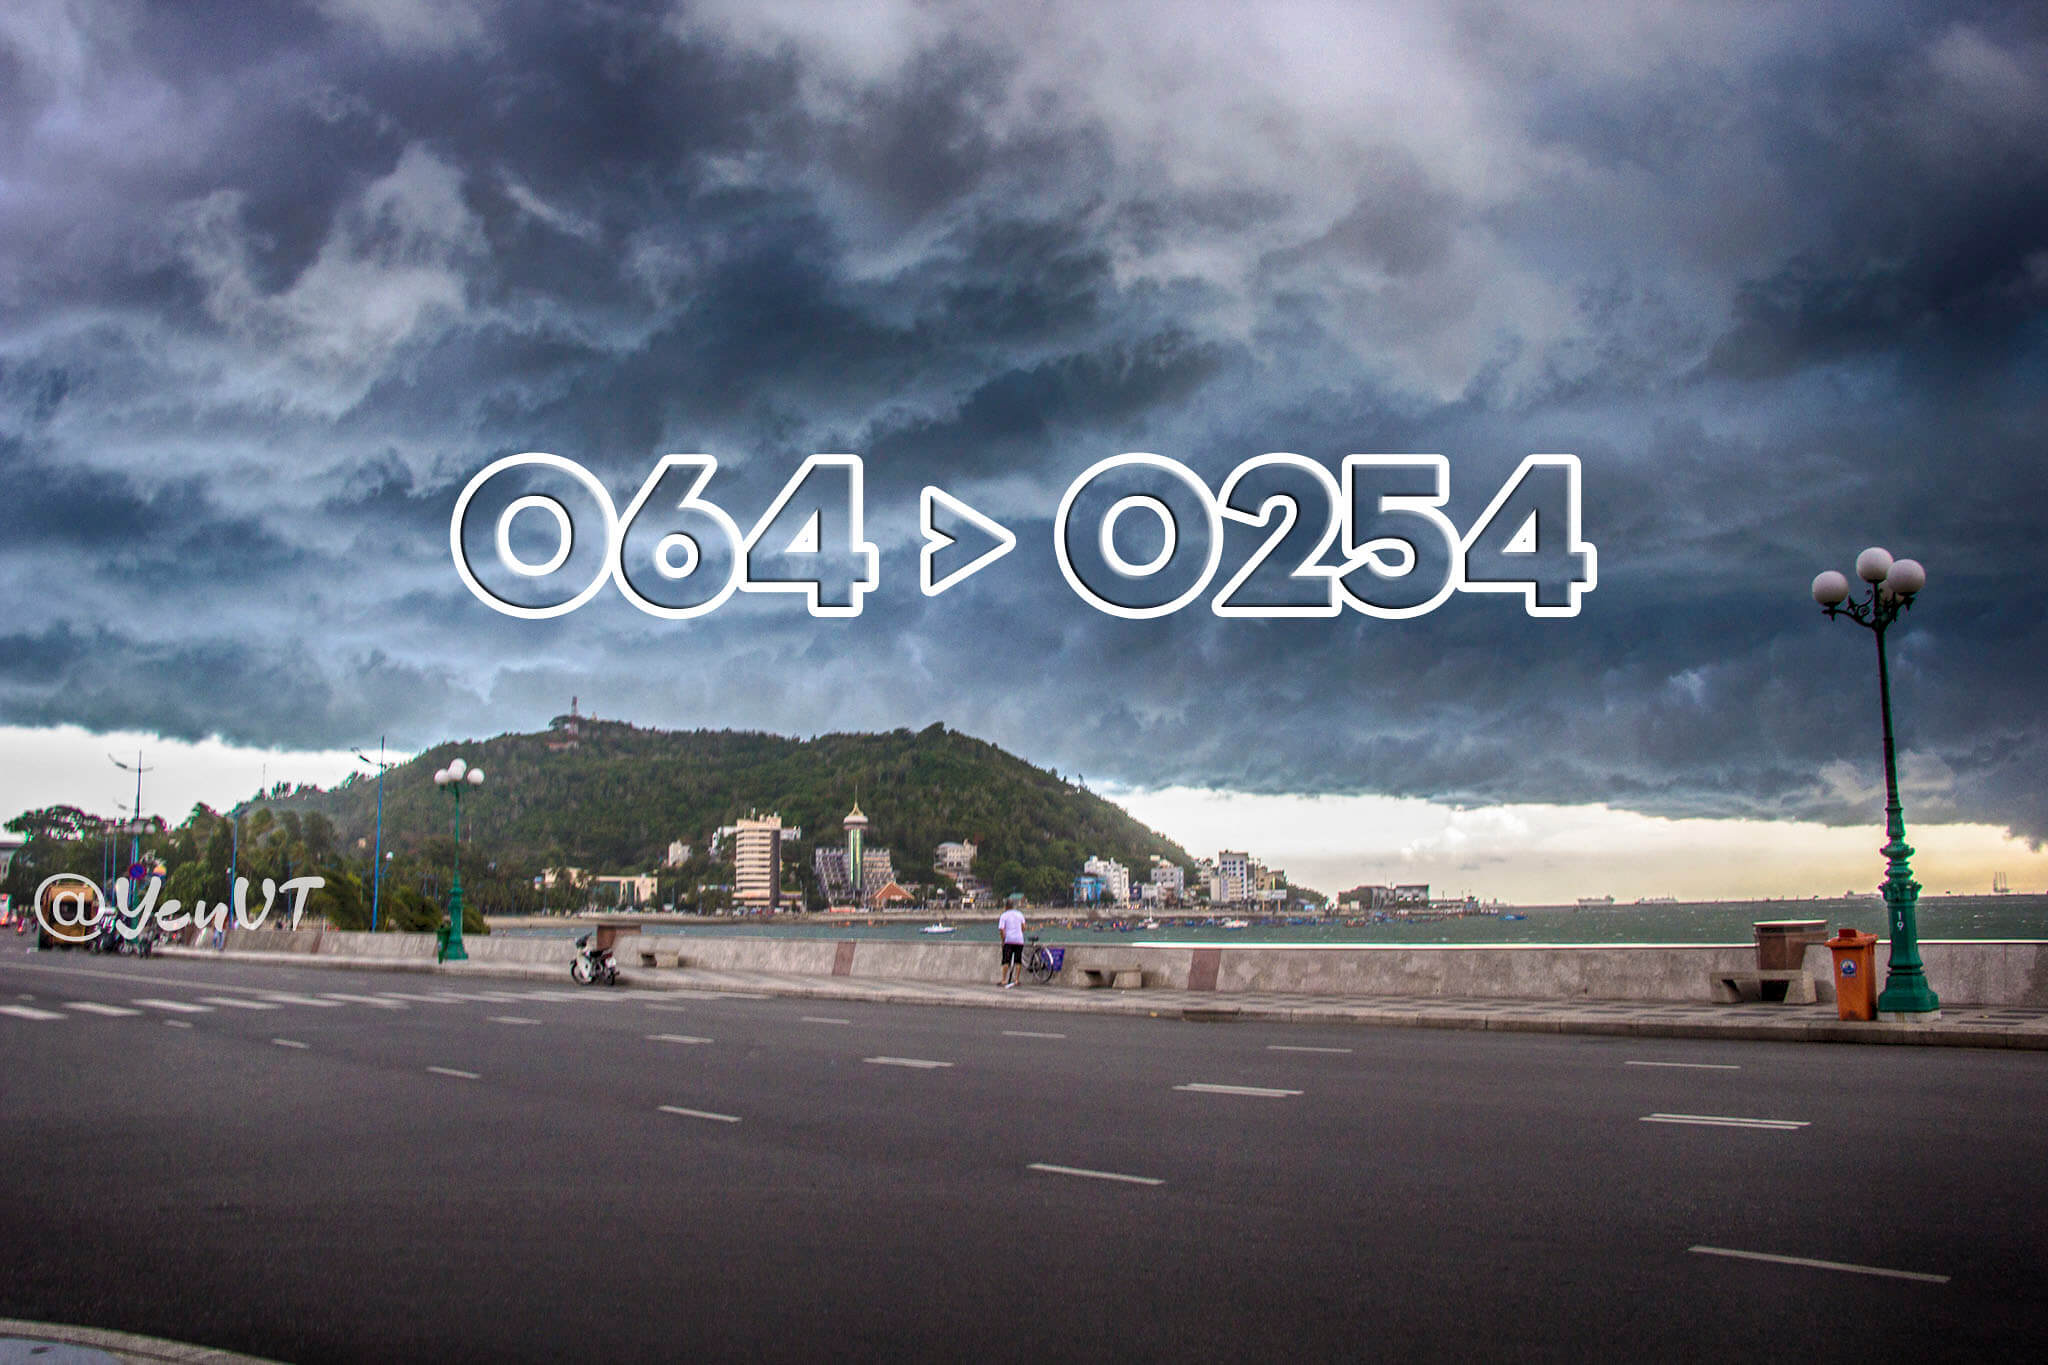 0254 còn là đầu số di động cố định tại khu vực Bà Rịa - Vũng Tàu